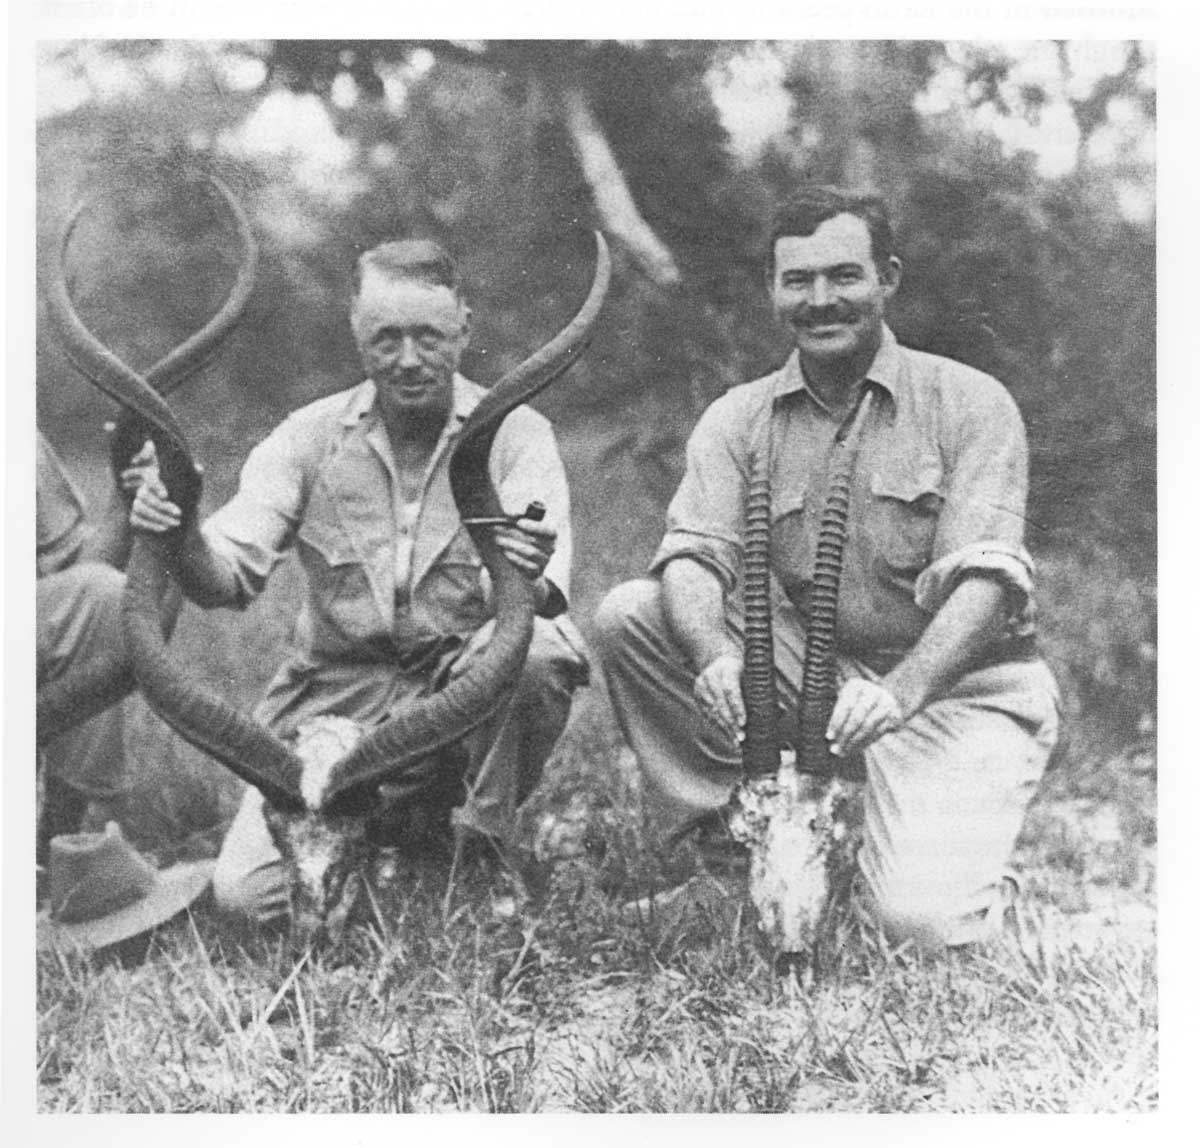 Ernest Hemingway and PH